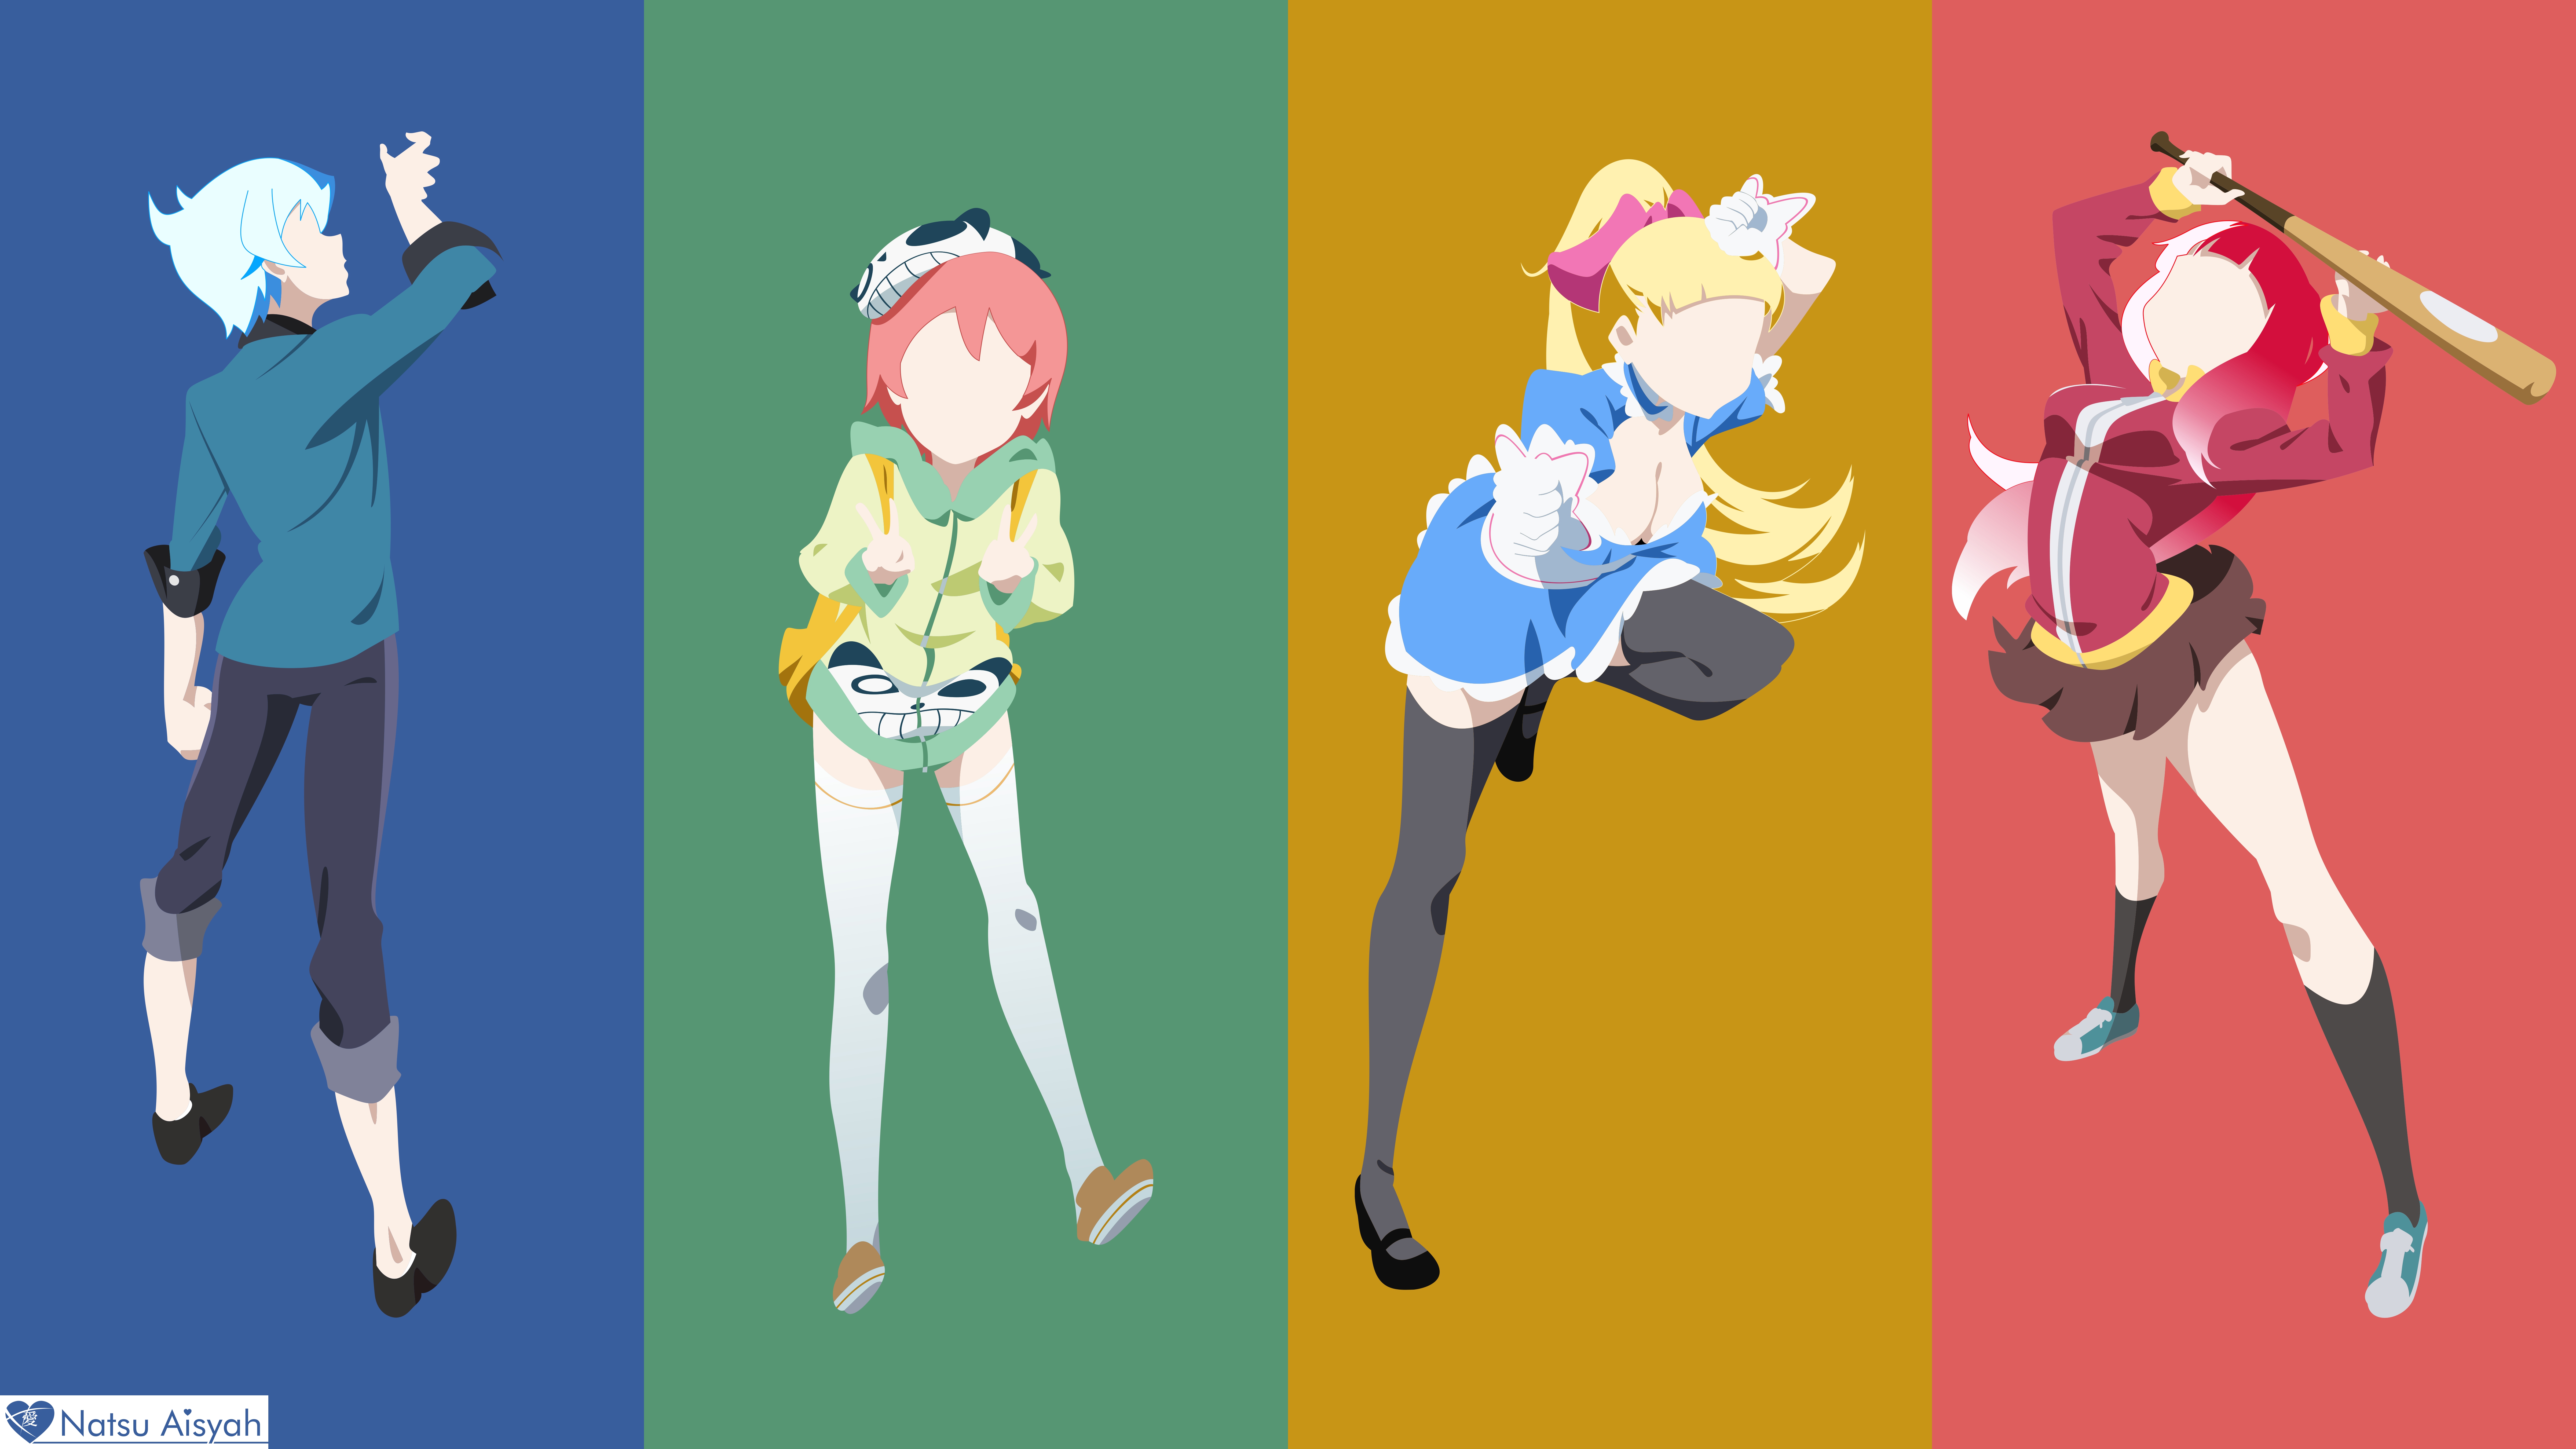 Anime Akiba's Trip HD Wallpaper | Background Image